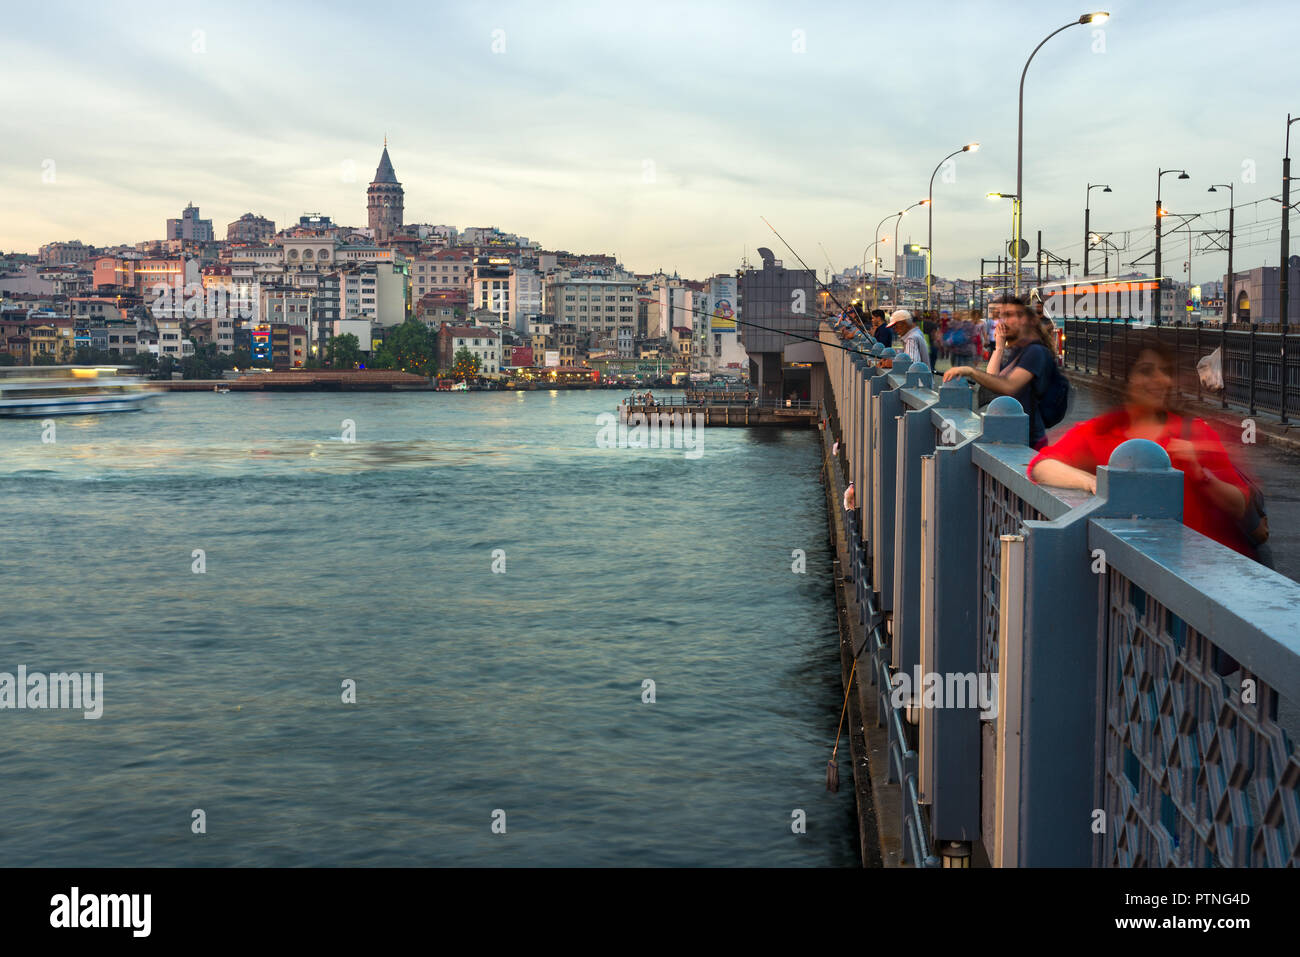 Il Ponte di Galata con pescatori pesca nel tardo pomeriggio di luce, Karakoy e Torre Galata può essere visto in lontananza, Istanbul, Turchia Foto Stock